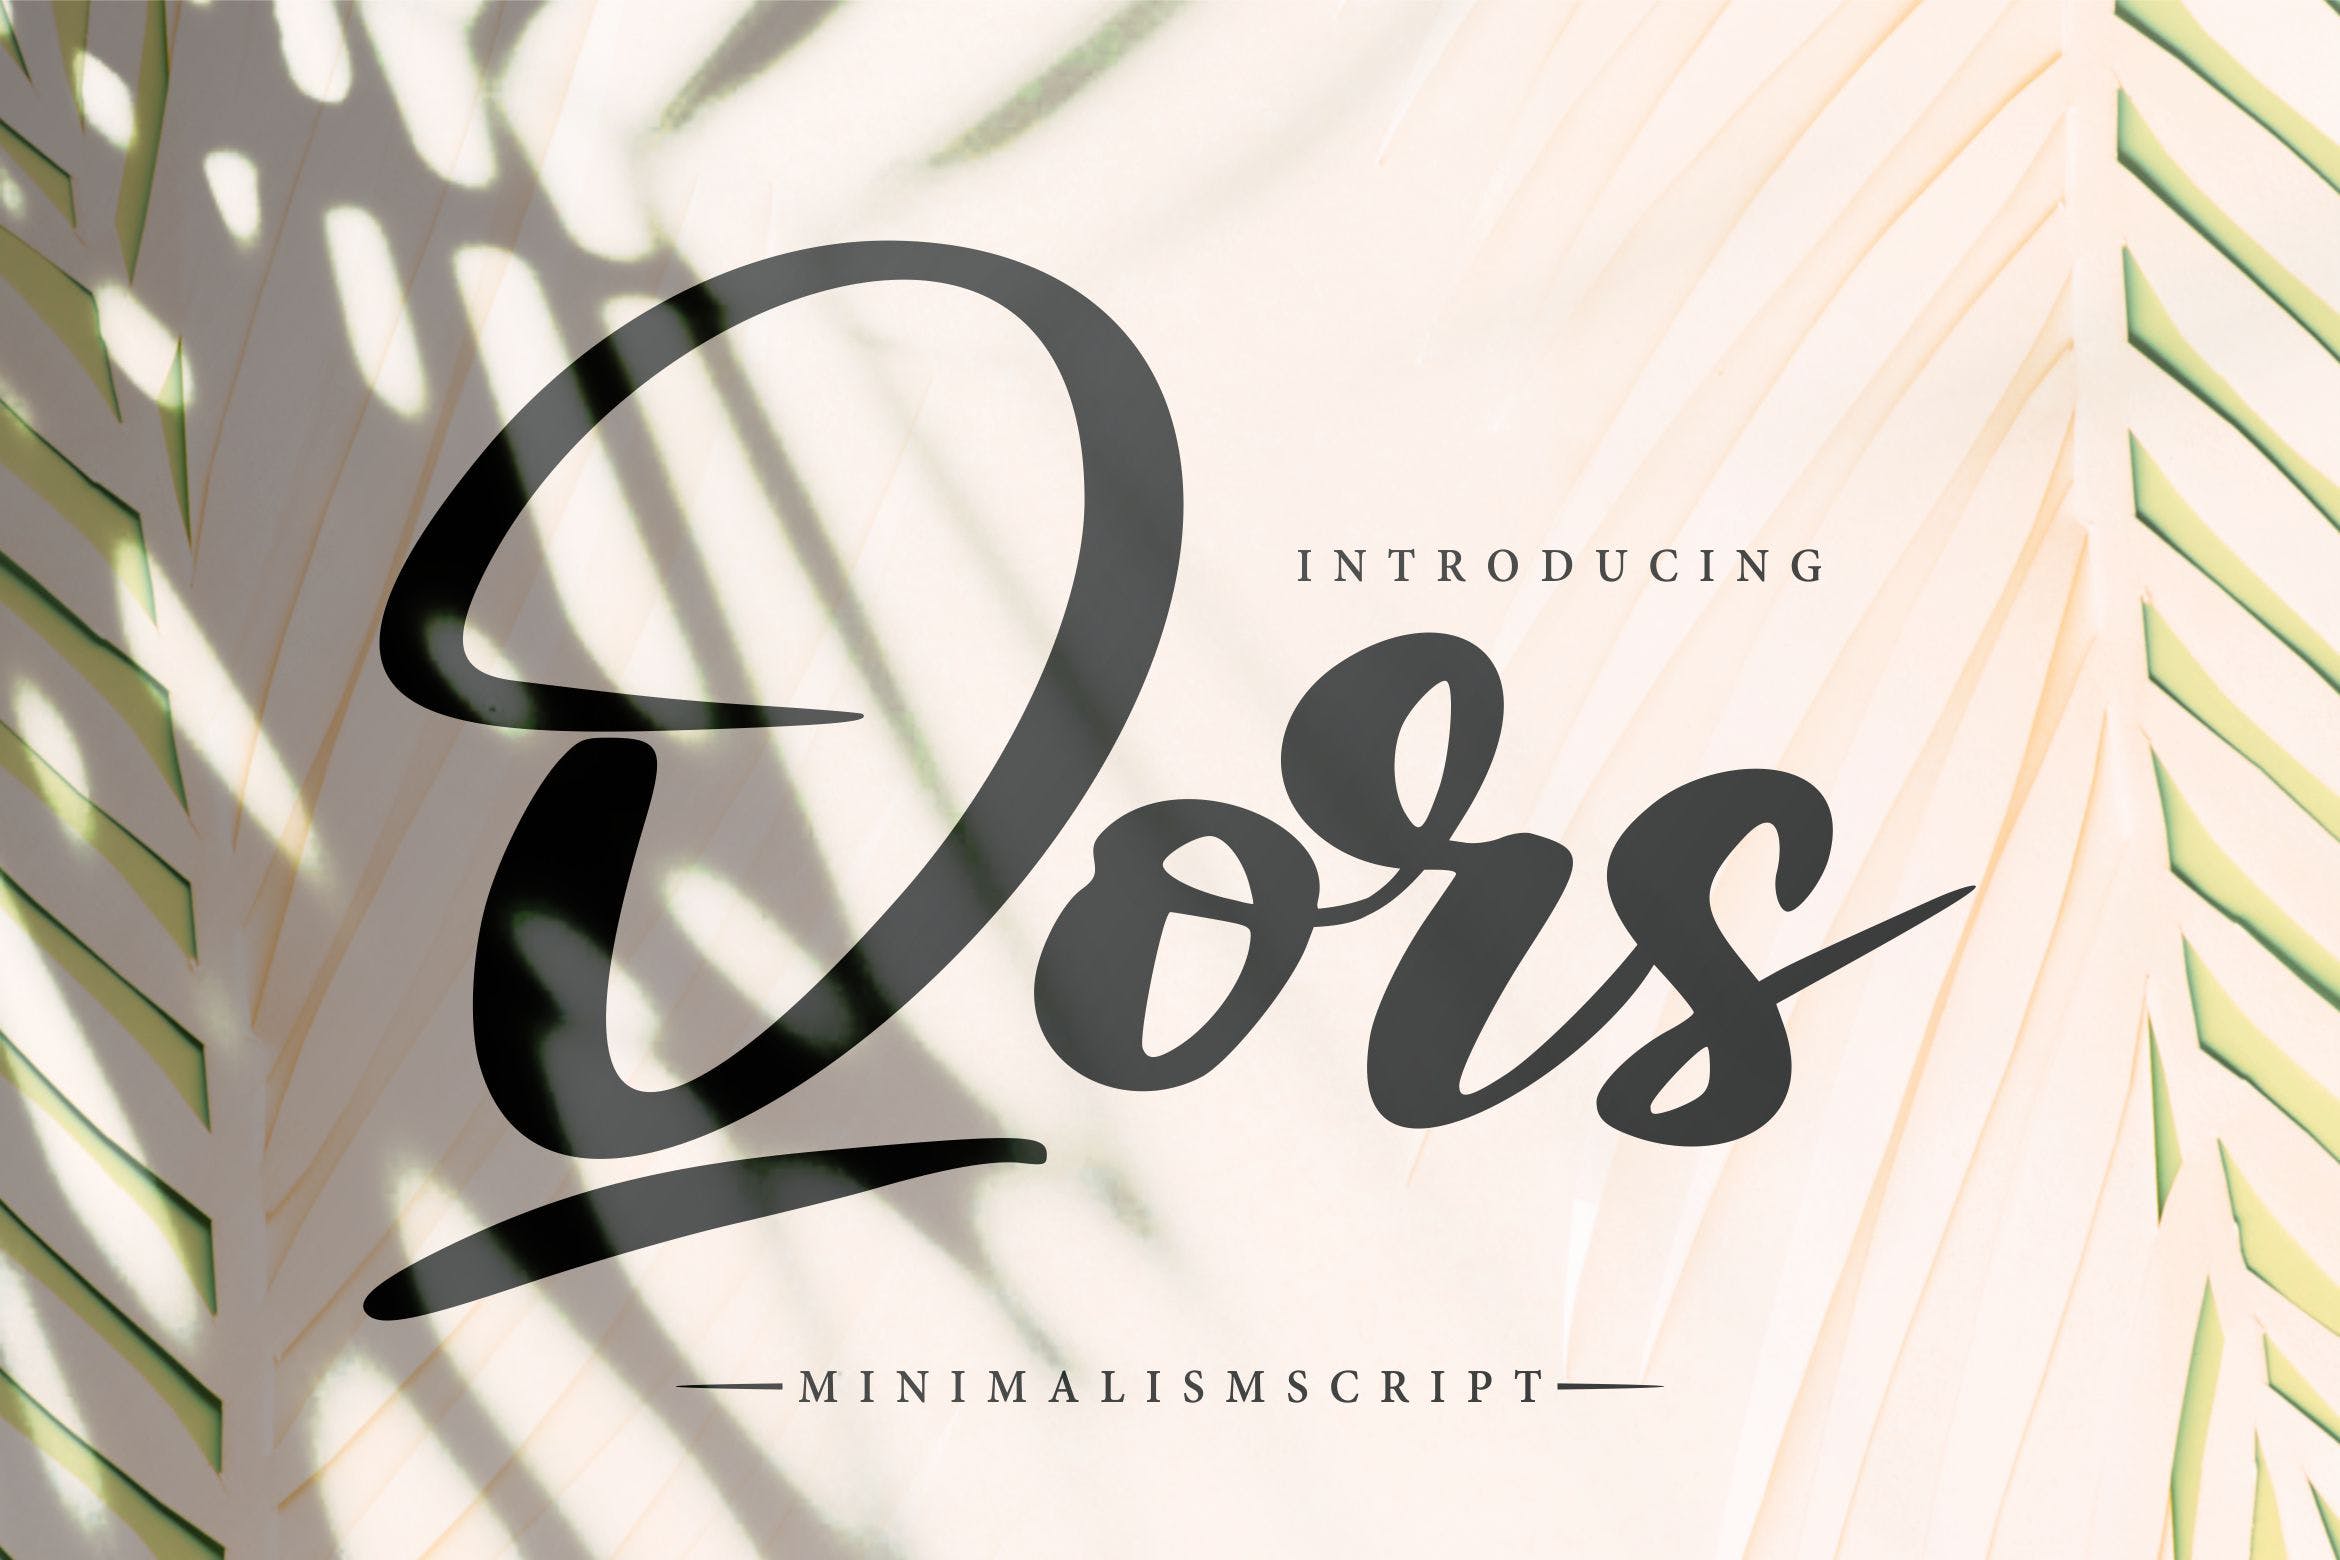 极简主义排版设计风格英文书法字体第一素材精选 Qors | Minimalism Script Font插图